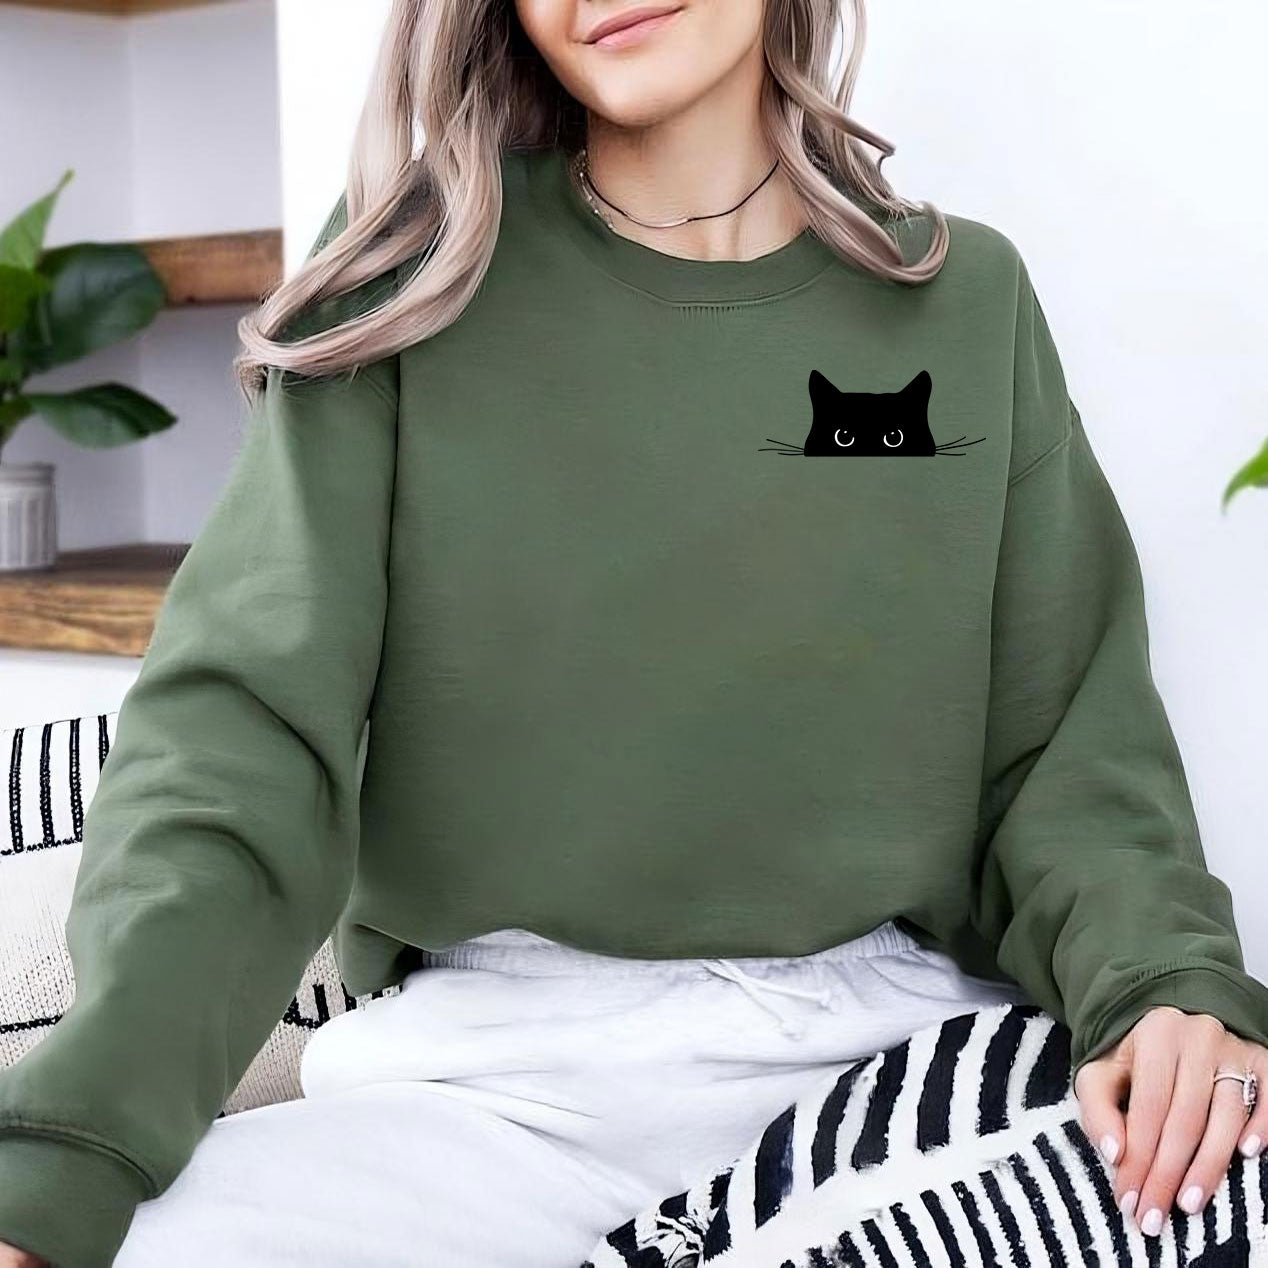 Süßes schwarzes Katzen Sweatshirt und Shirts – lustiges Geschenk für Katzenliebhaber